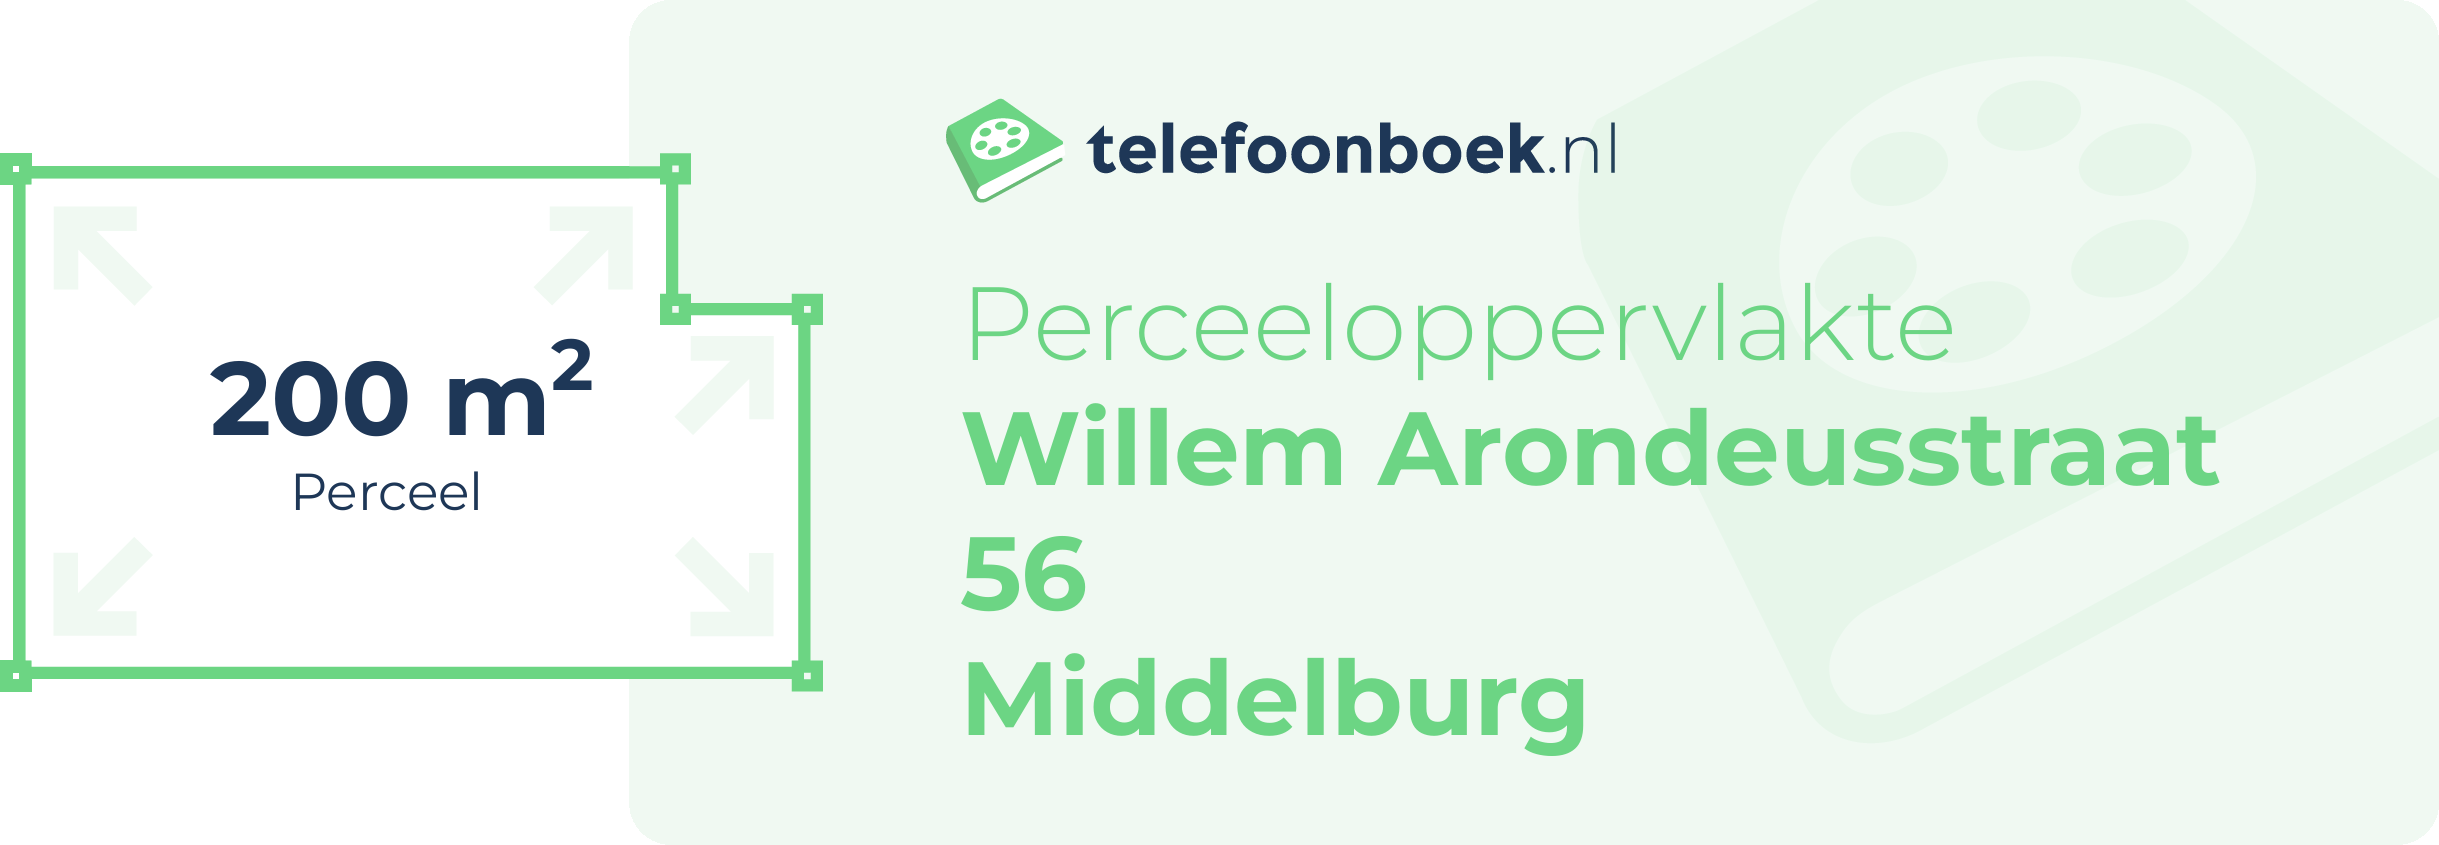 Perceeloppervlakte Willem Arondeusstraat 56 Middelburg